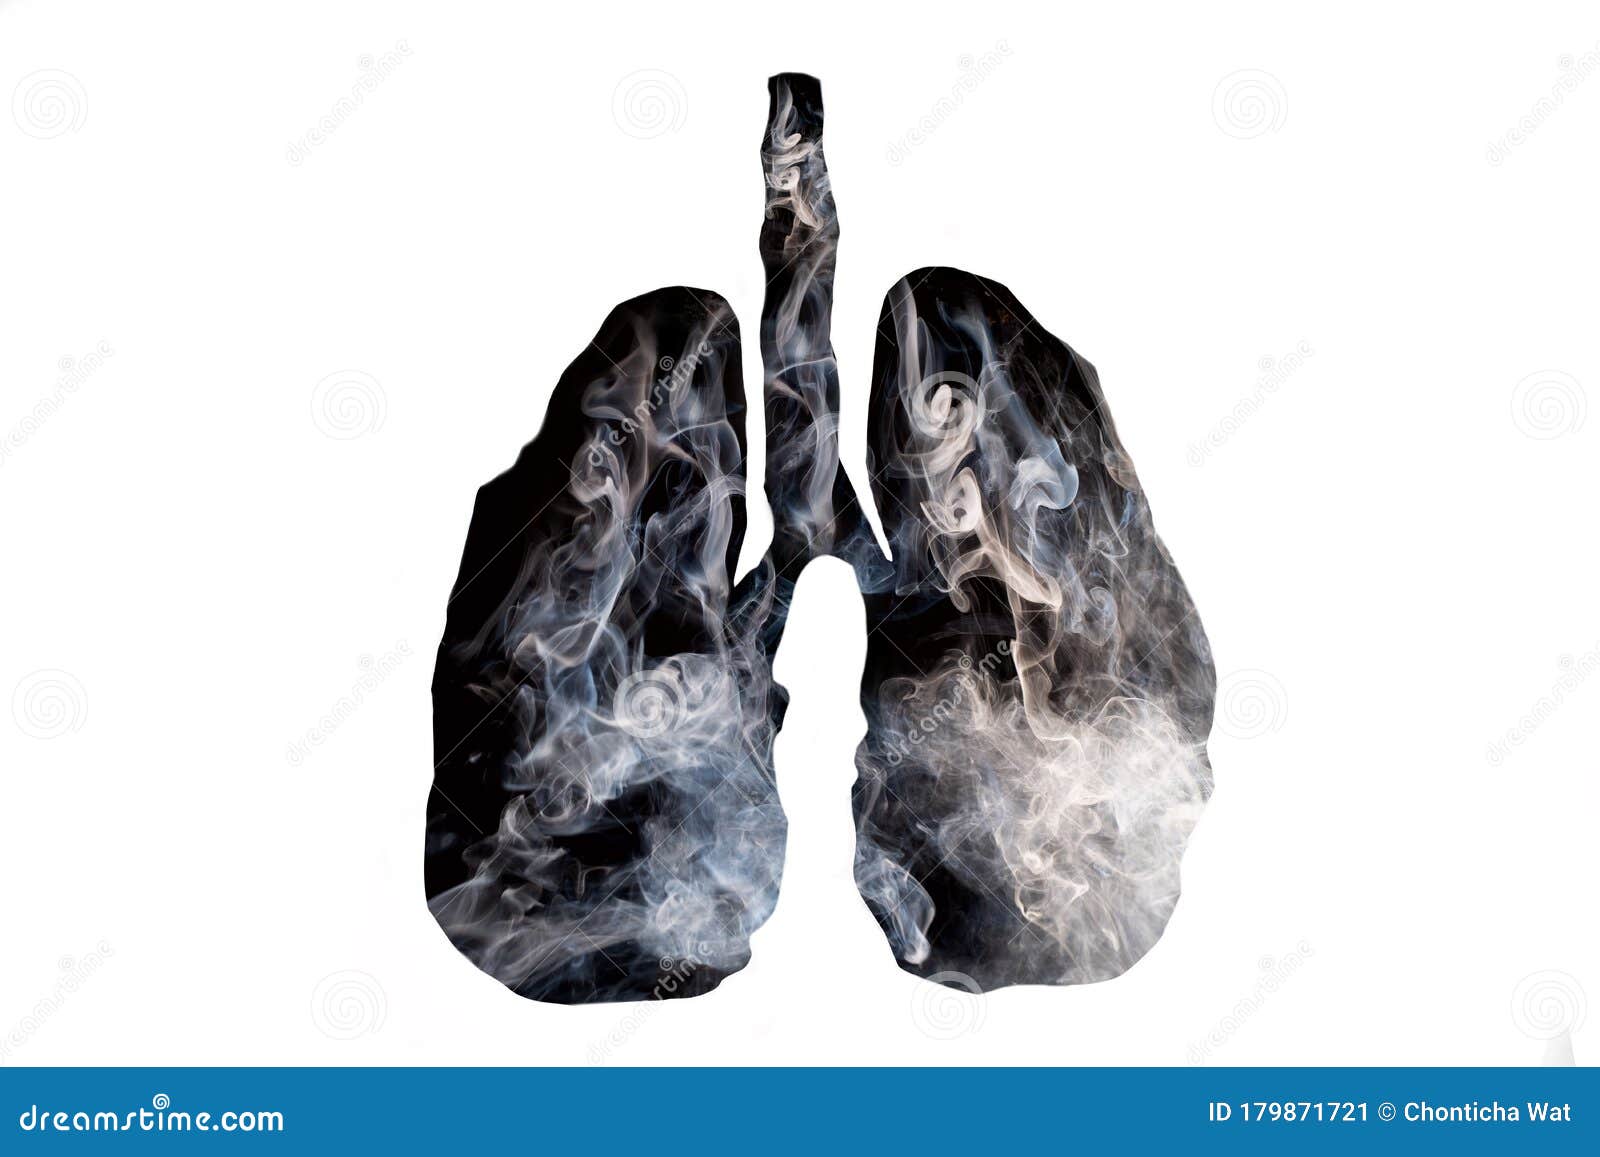 这个部位很黑，最好去检查一下肺部，肺癌可能已经找上你_吸烟史